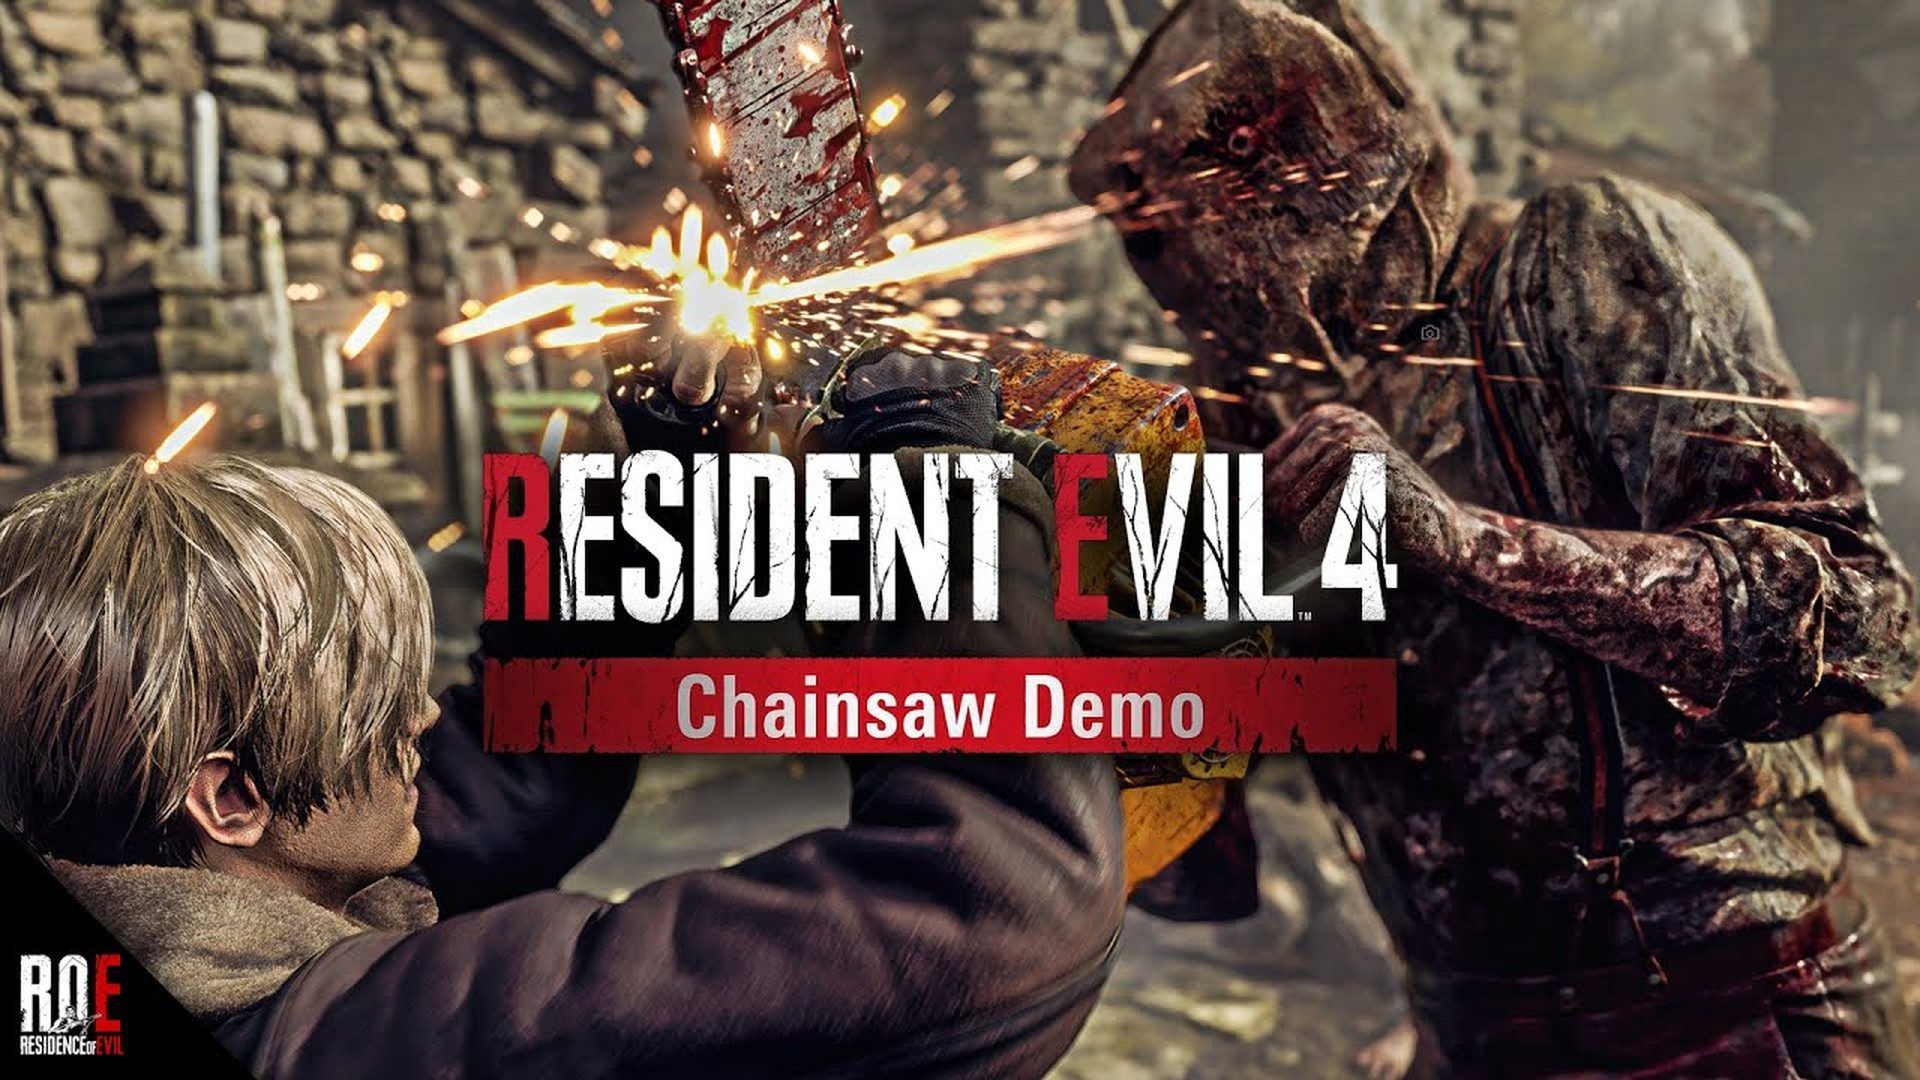 Resident Evil 4 Chainsaw Demo est sorti et il n’y a pas de limite de temps